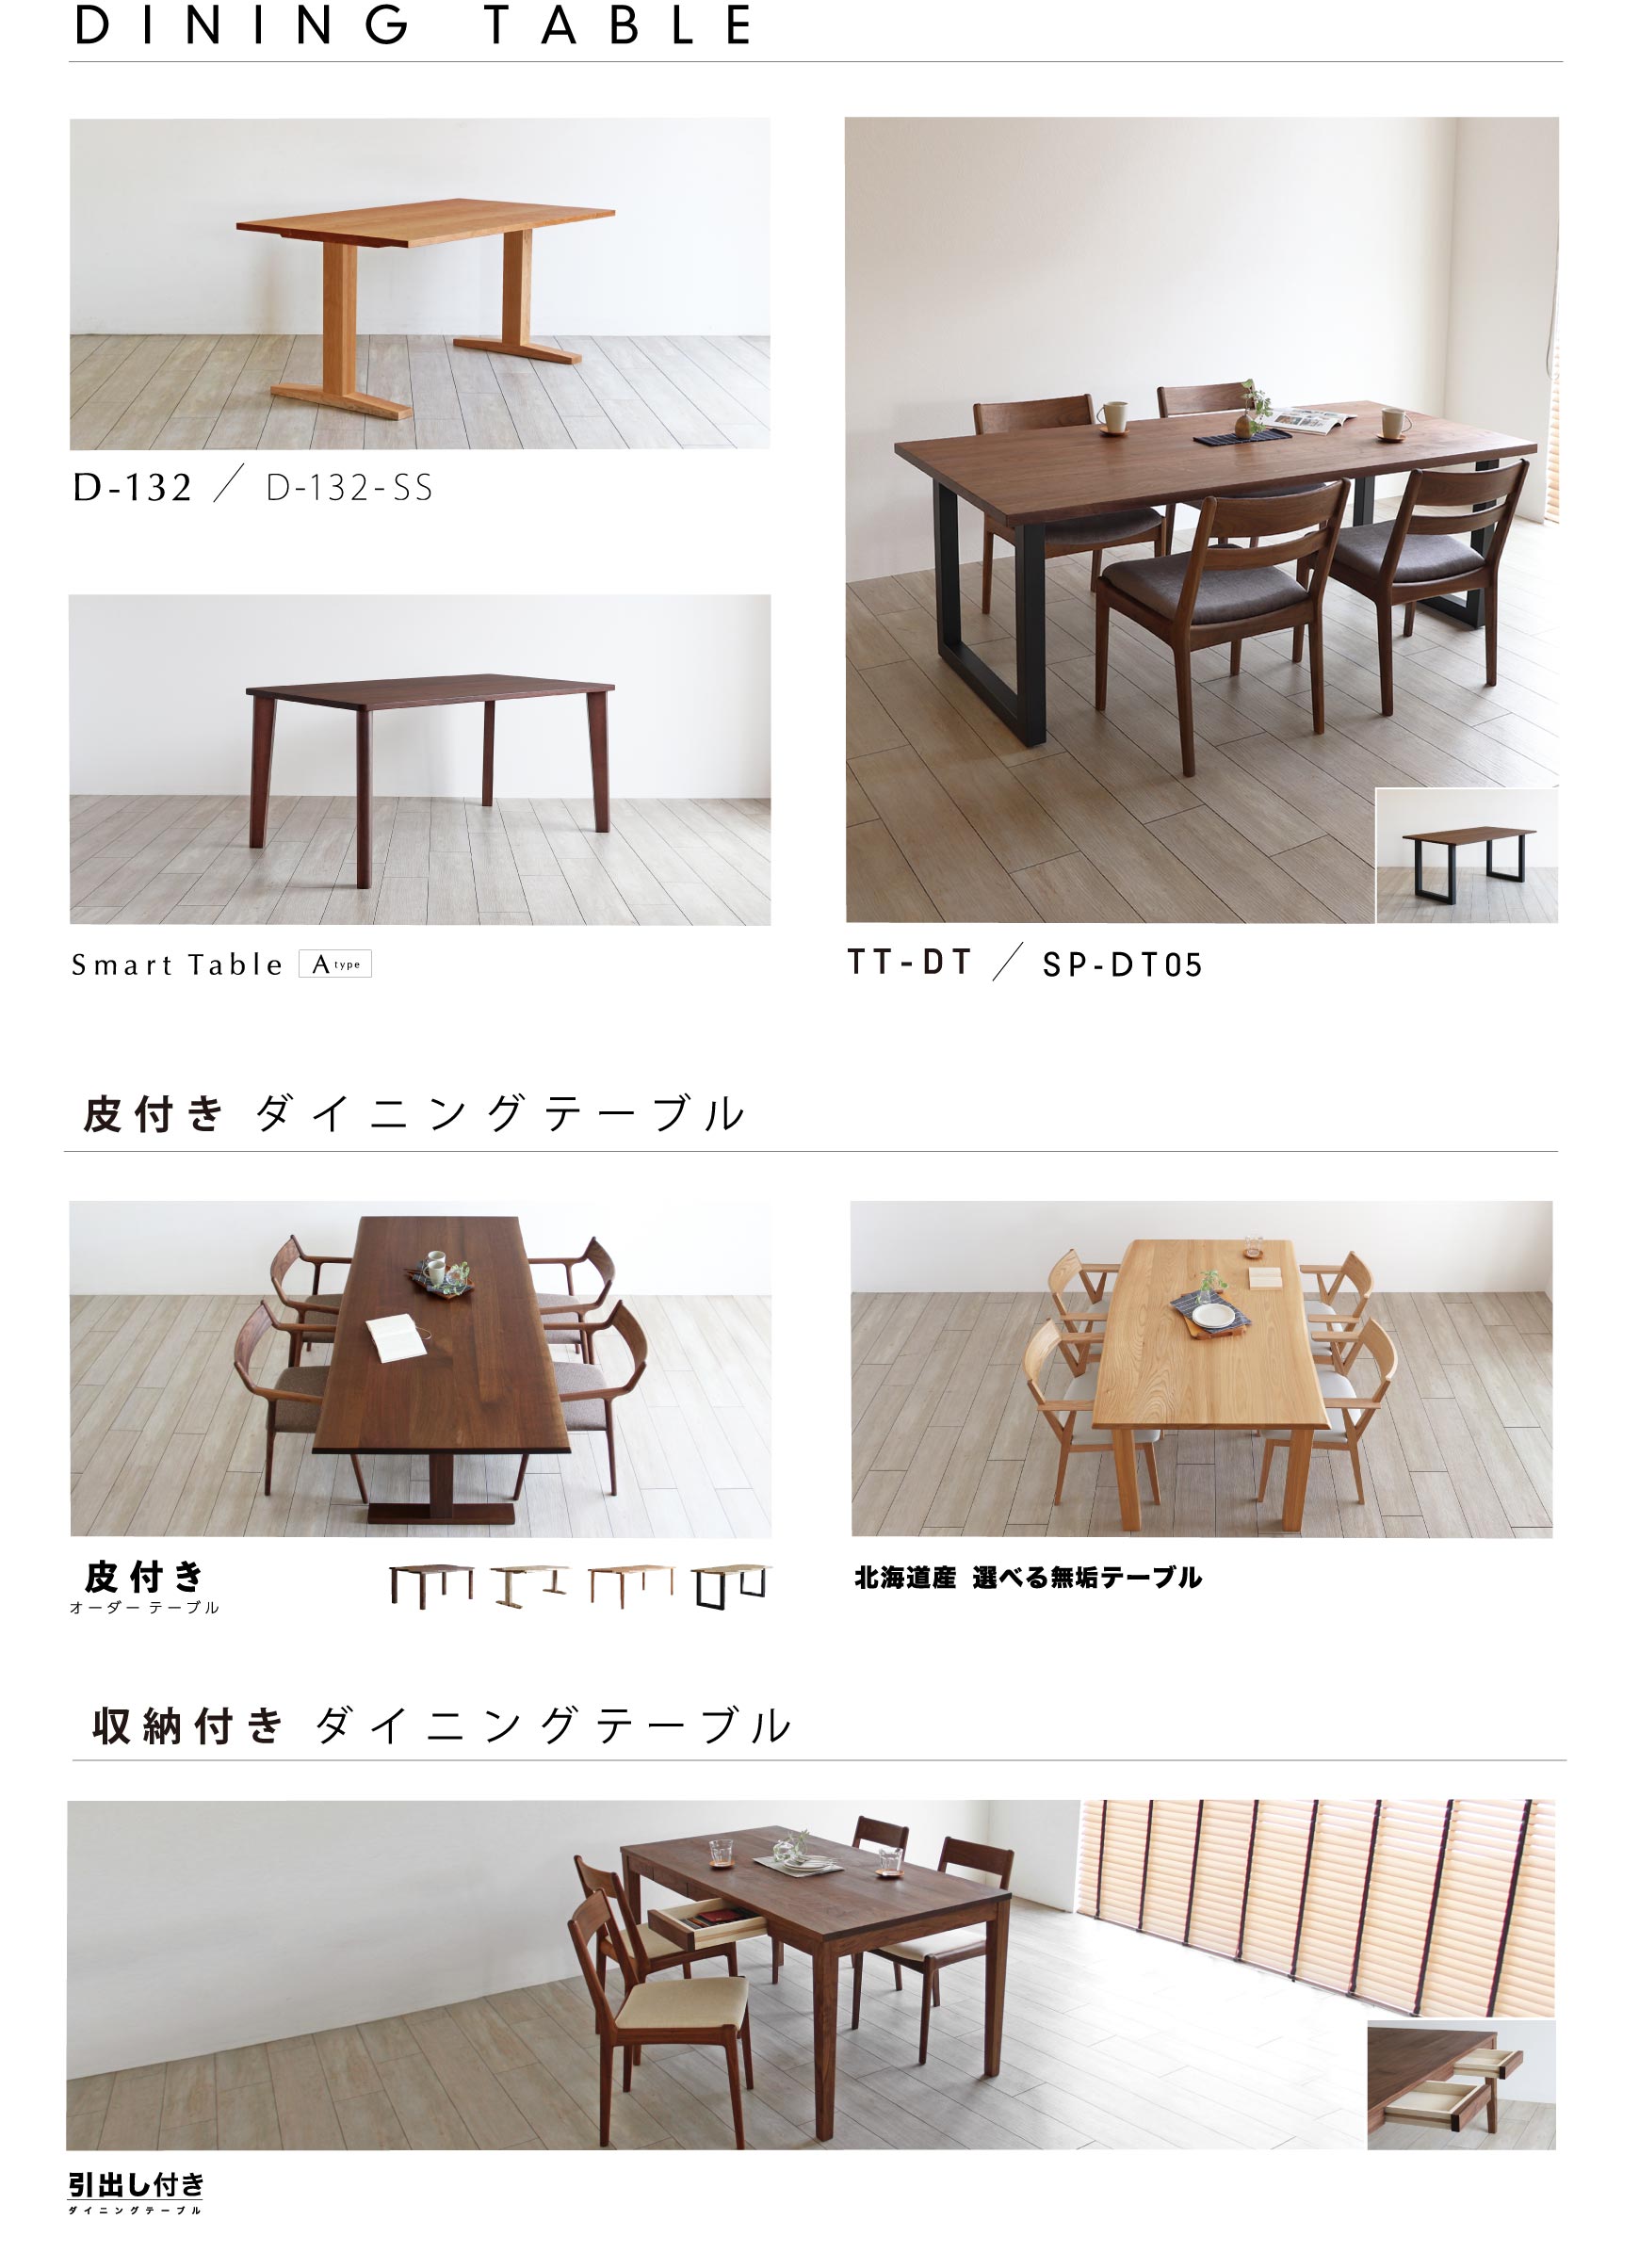 日本の職人が丁寧につくり上げる上質なダイニングテーブル・キッチンボード